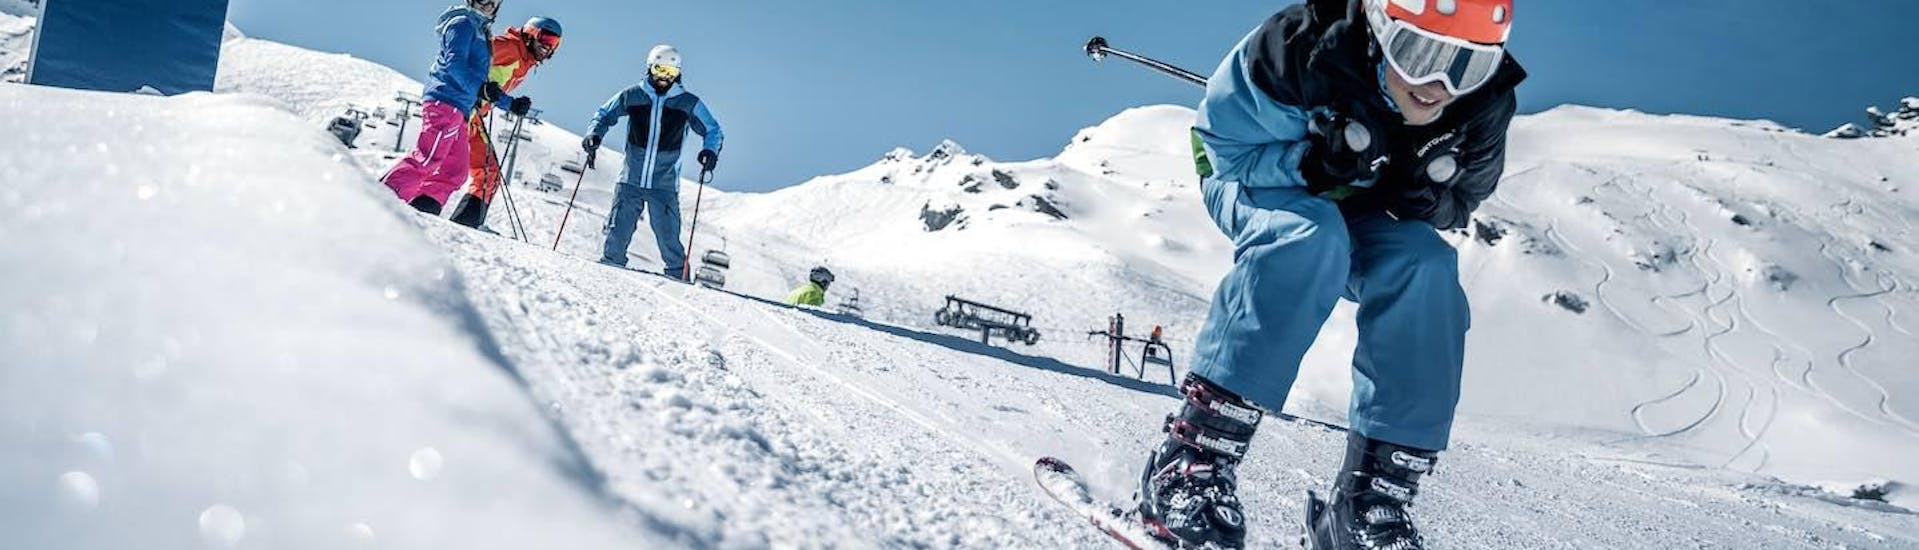 Clases de esquí para niños a partir de 12 años para todos los niveles.